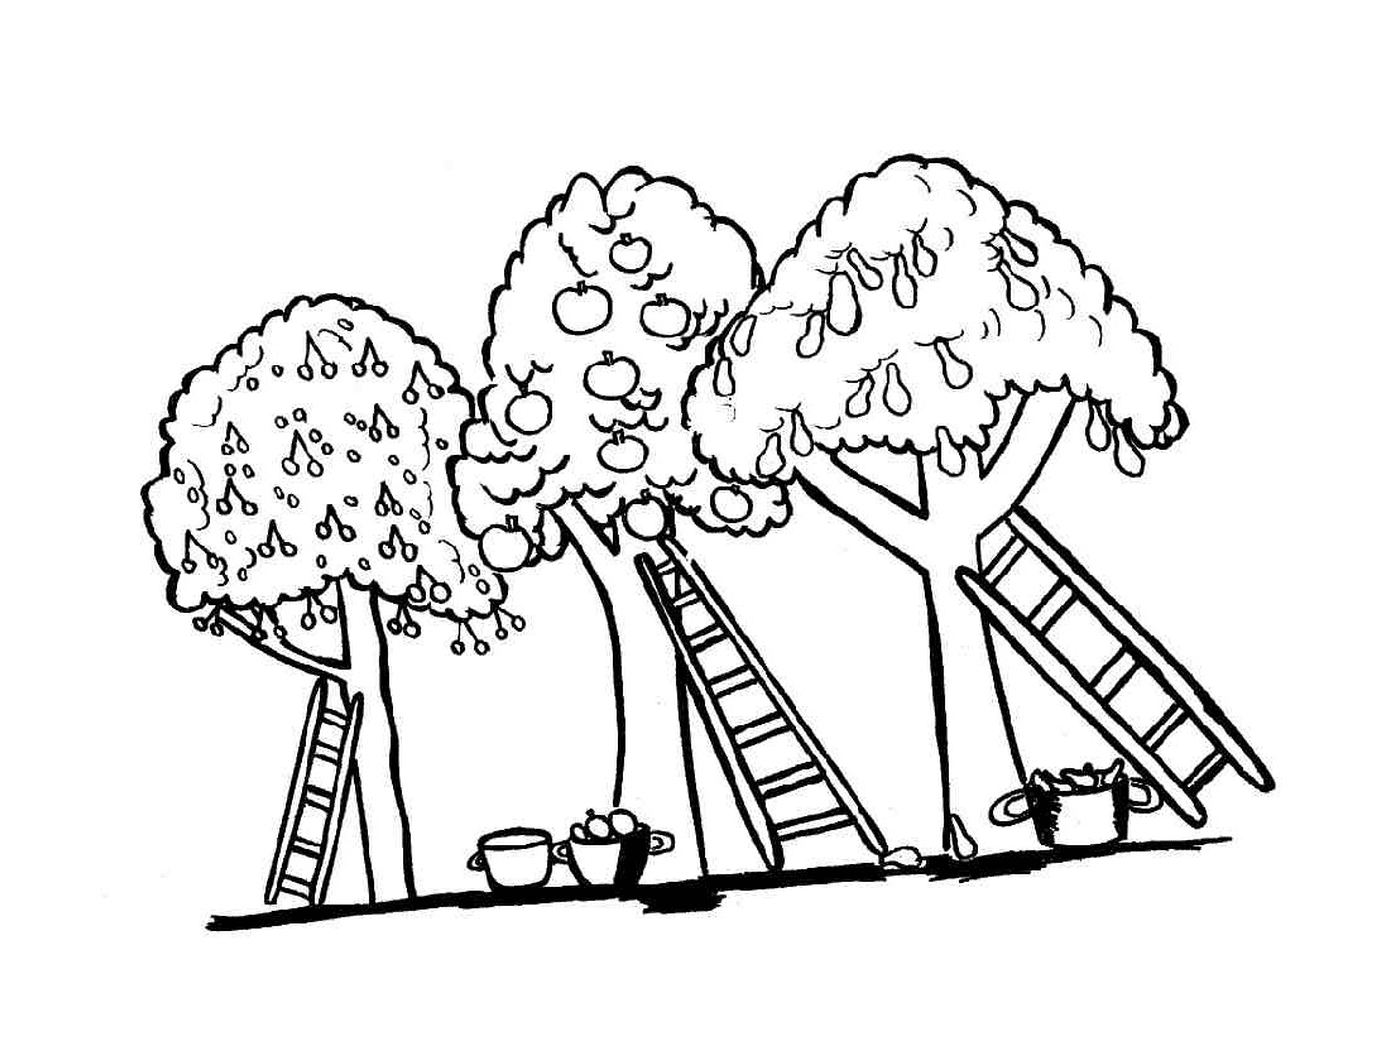  Деревья и лестницы 